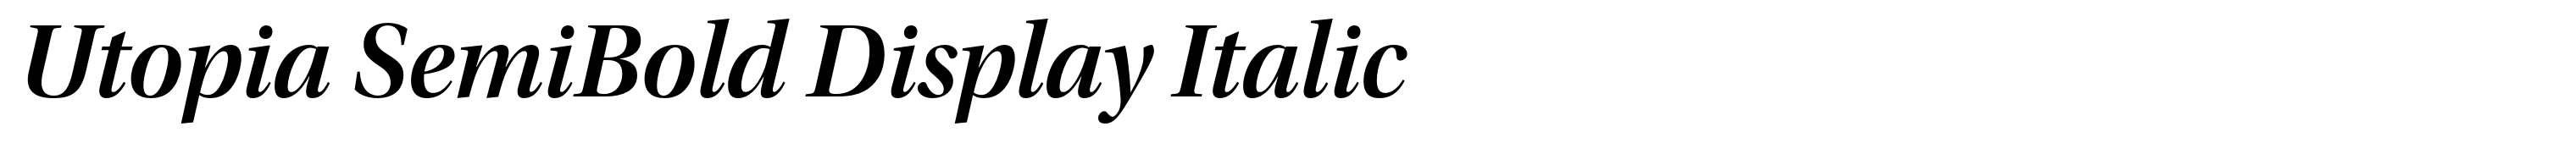 Utopia SemiBold Display Italic